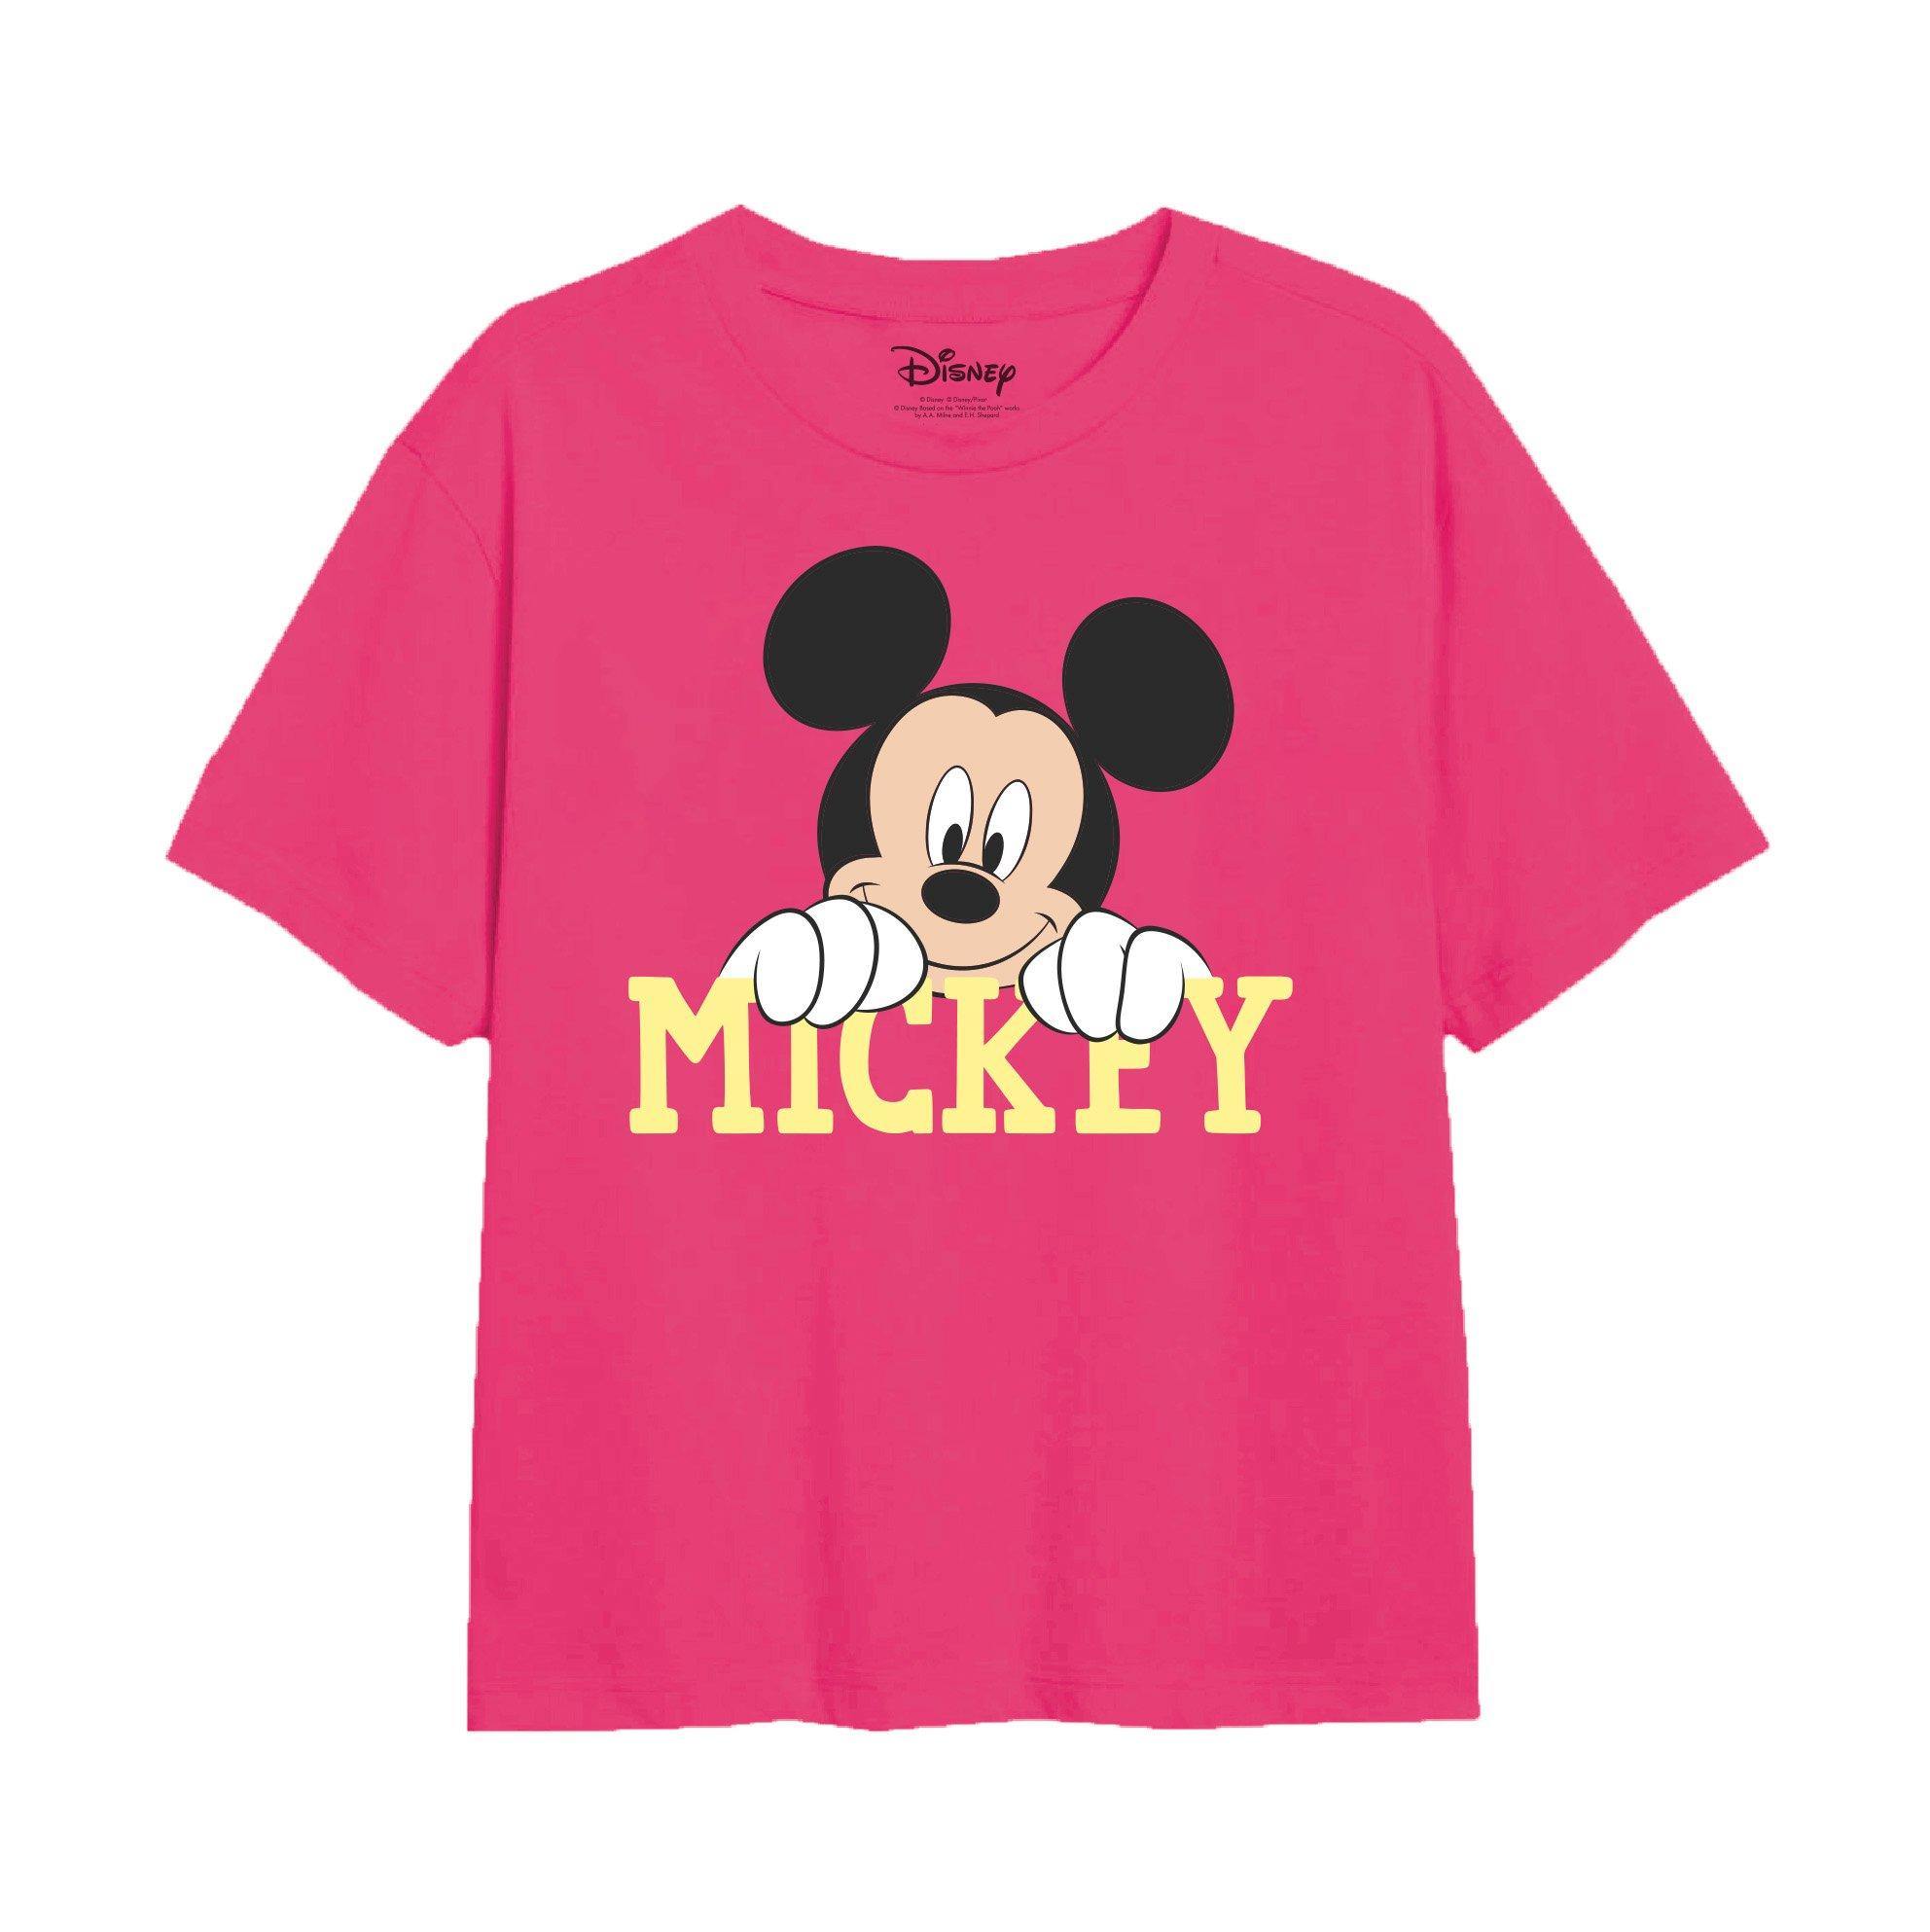 Футболка с милым лицом Микки Мауса Disney, розовый пазлы dianey с микки и минни маус 300 500 1000 шт